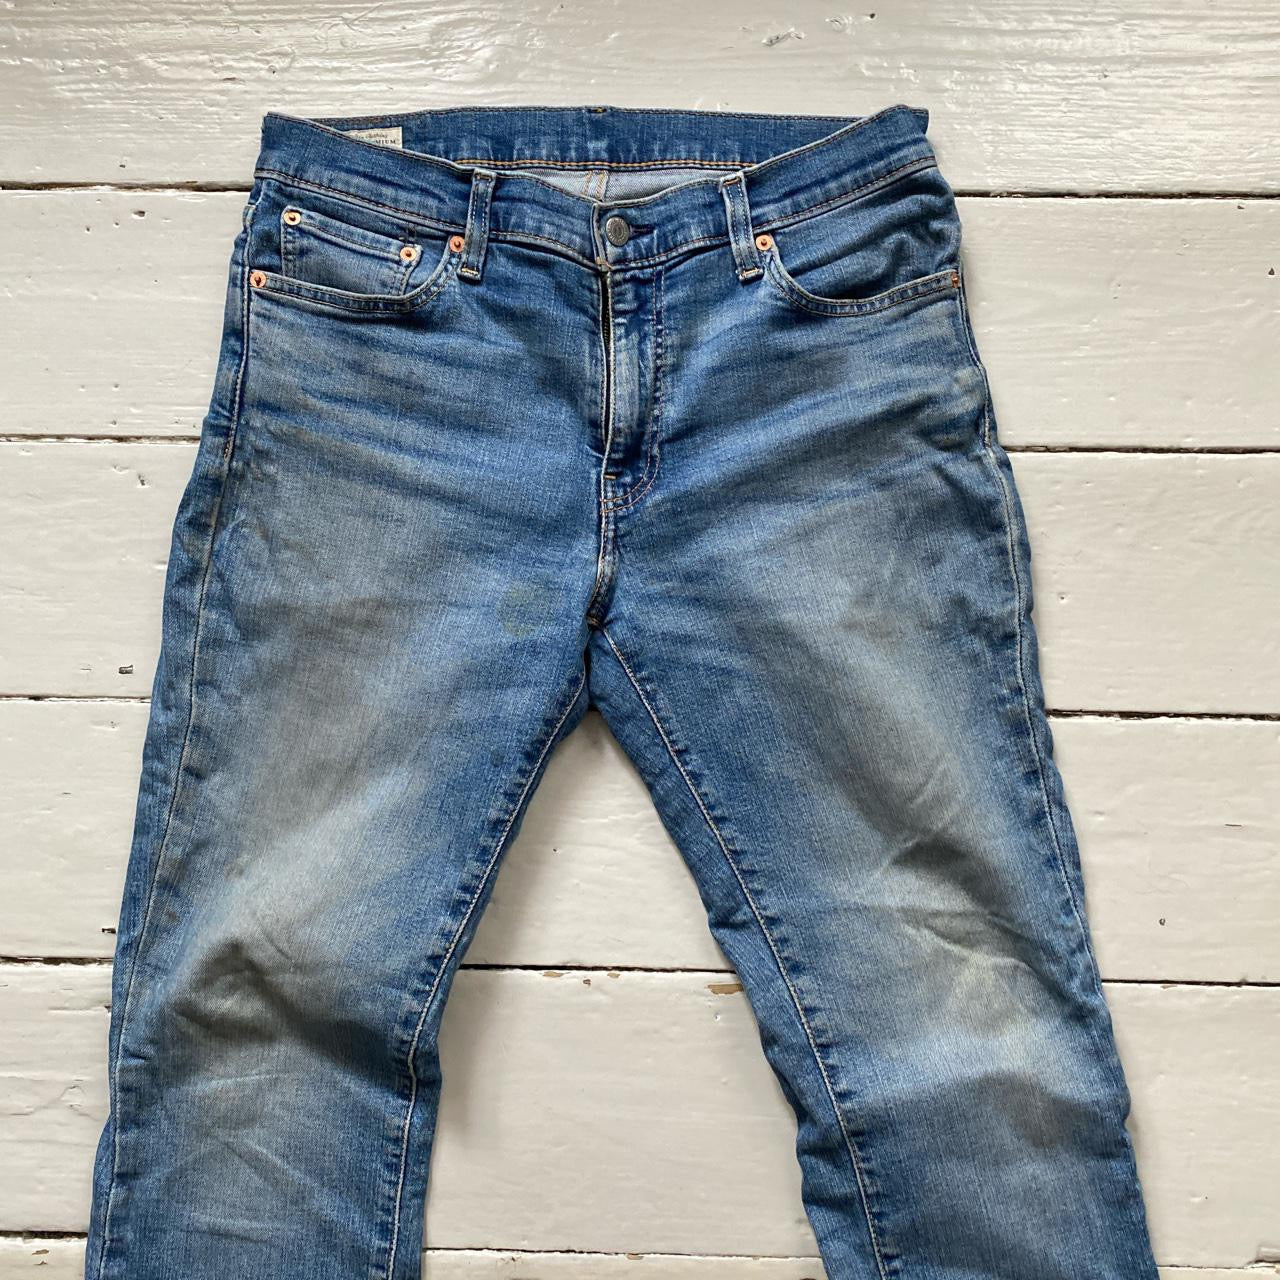 Levis 511 classic light wash Jeans (33/32)